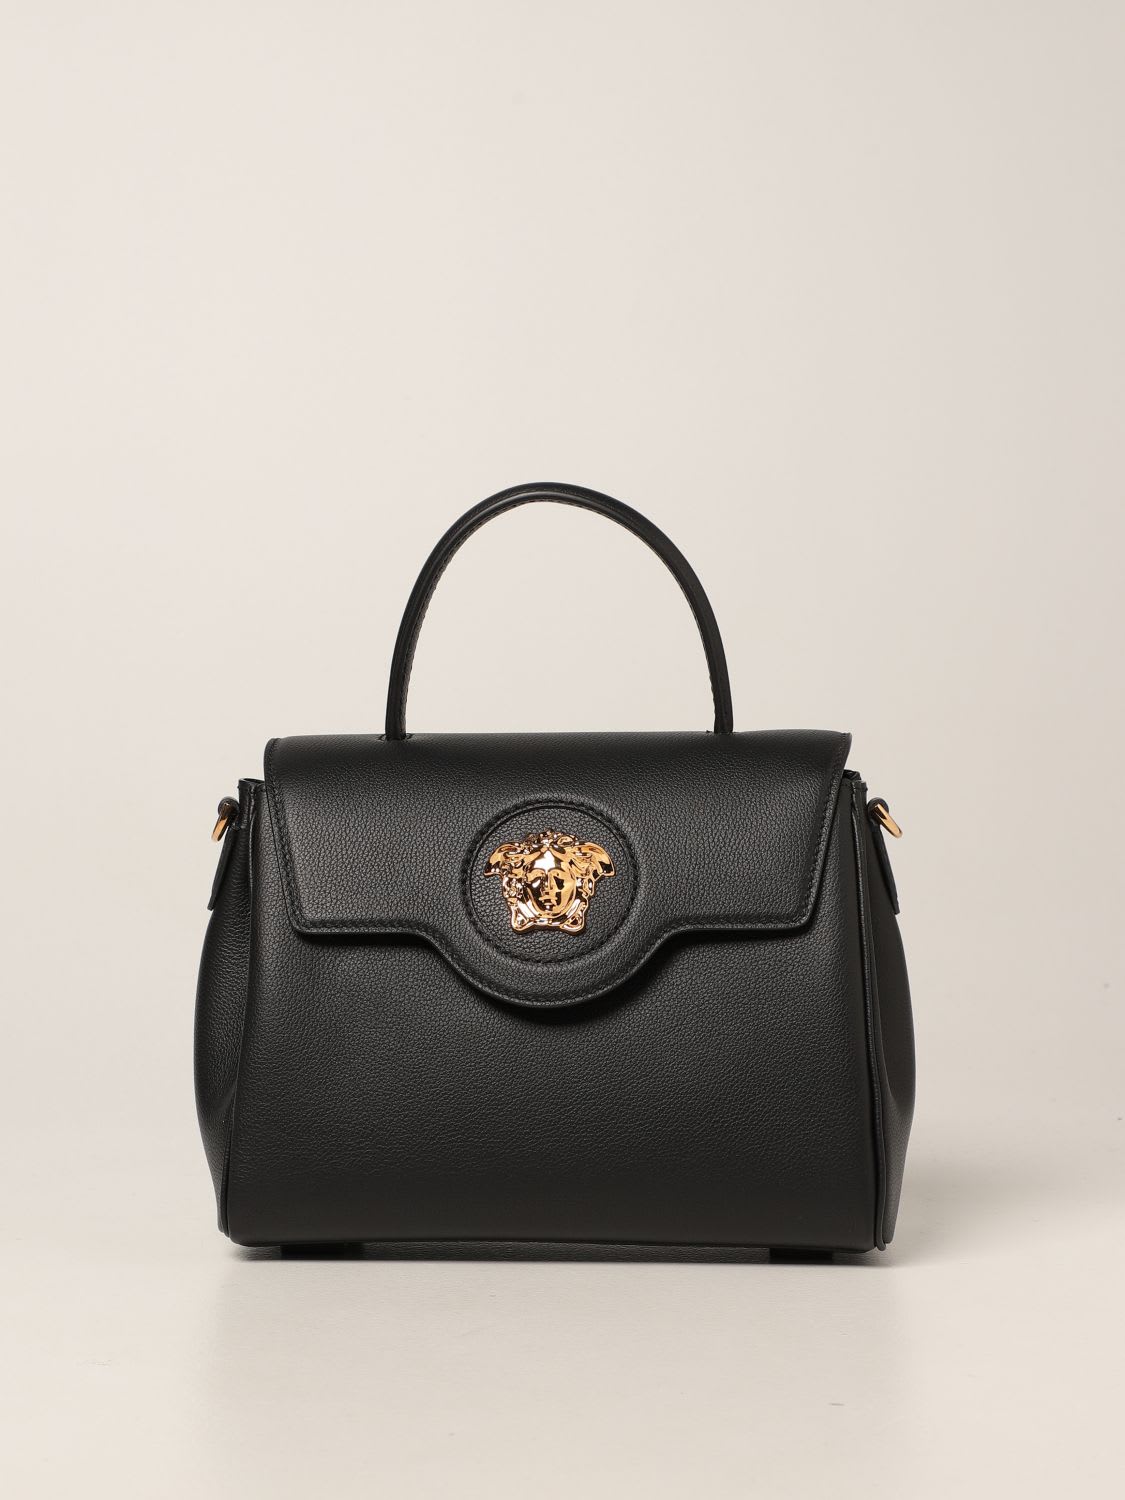 Versace Shoulder Bag La Medusa Versace Leather Handbag